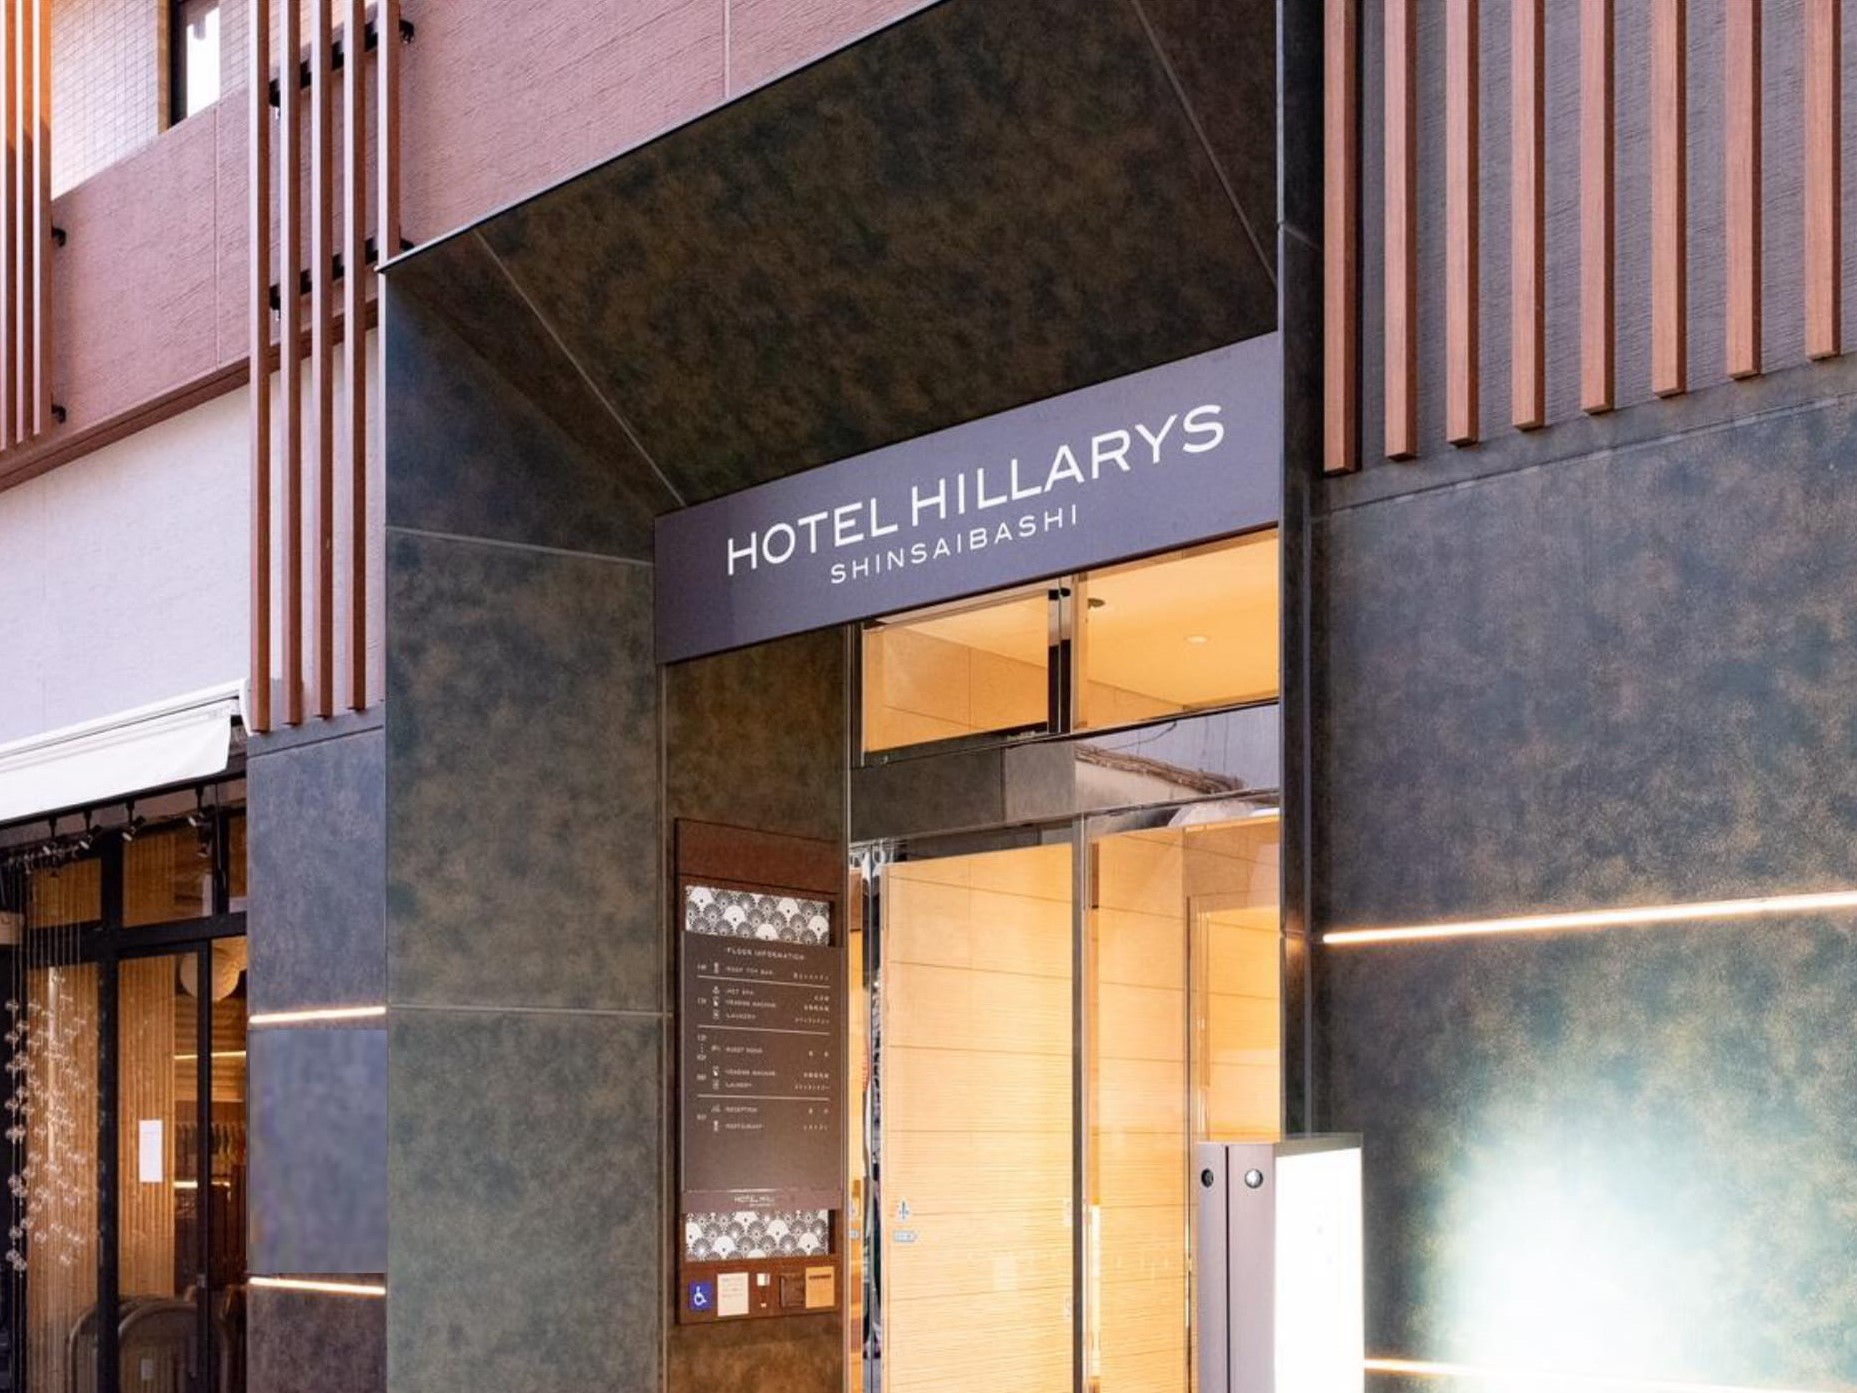 Hotel Hillarys Shinsaibashi